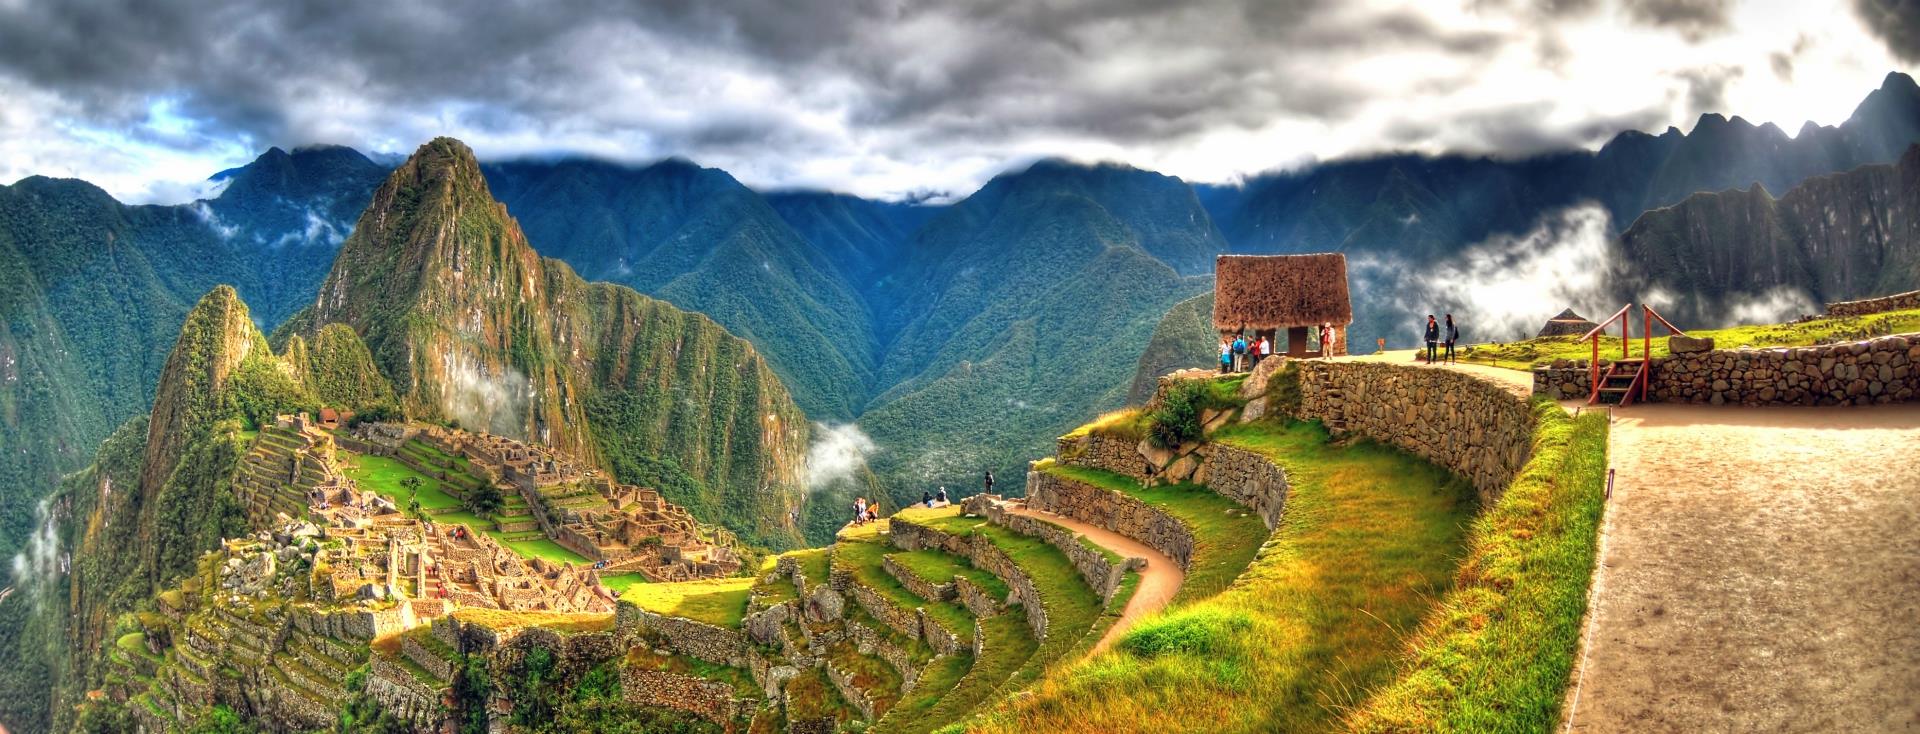 Najlepsze atrakcje w Peru – co warto zobaczyć?